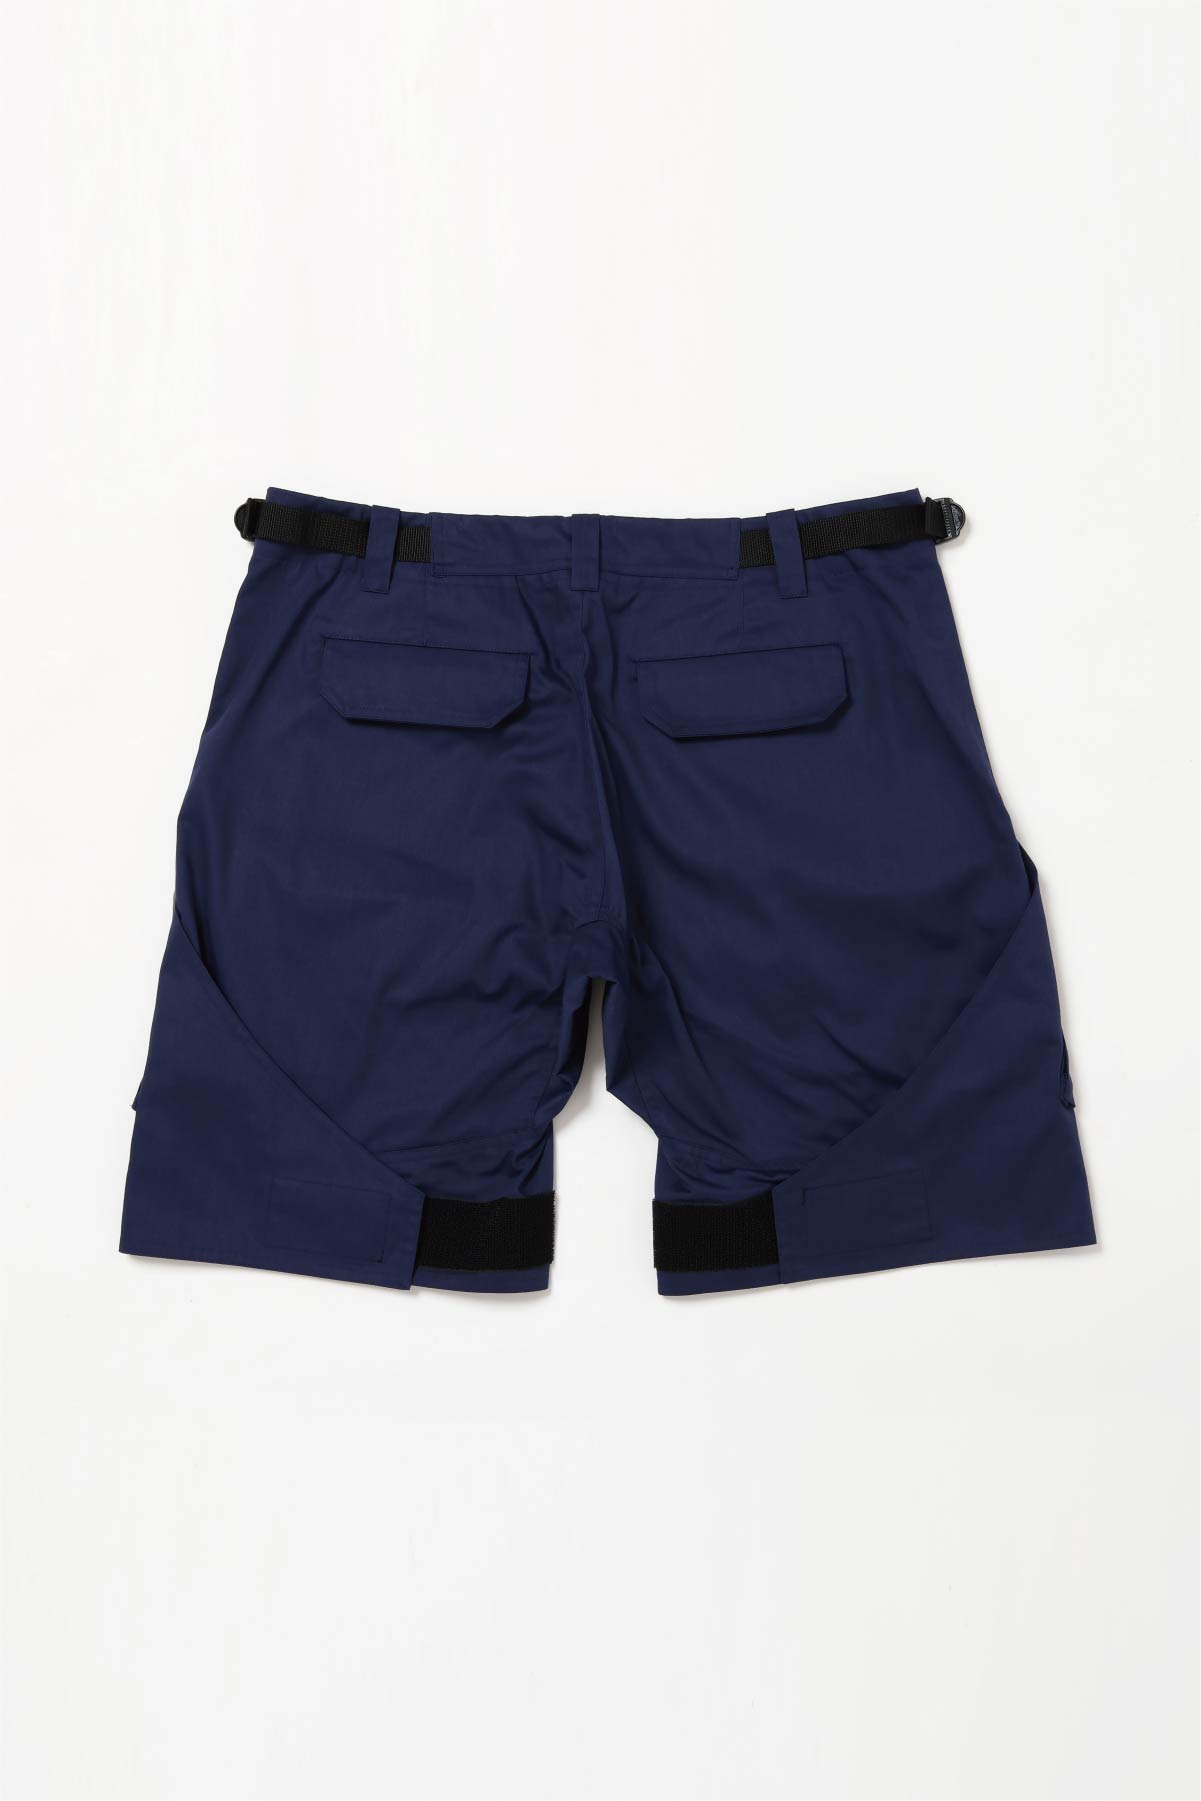 Flap Shorts【Navy】